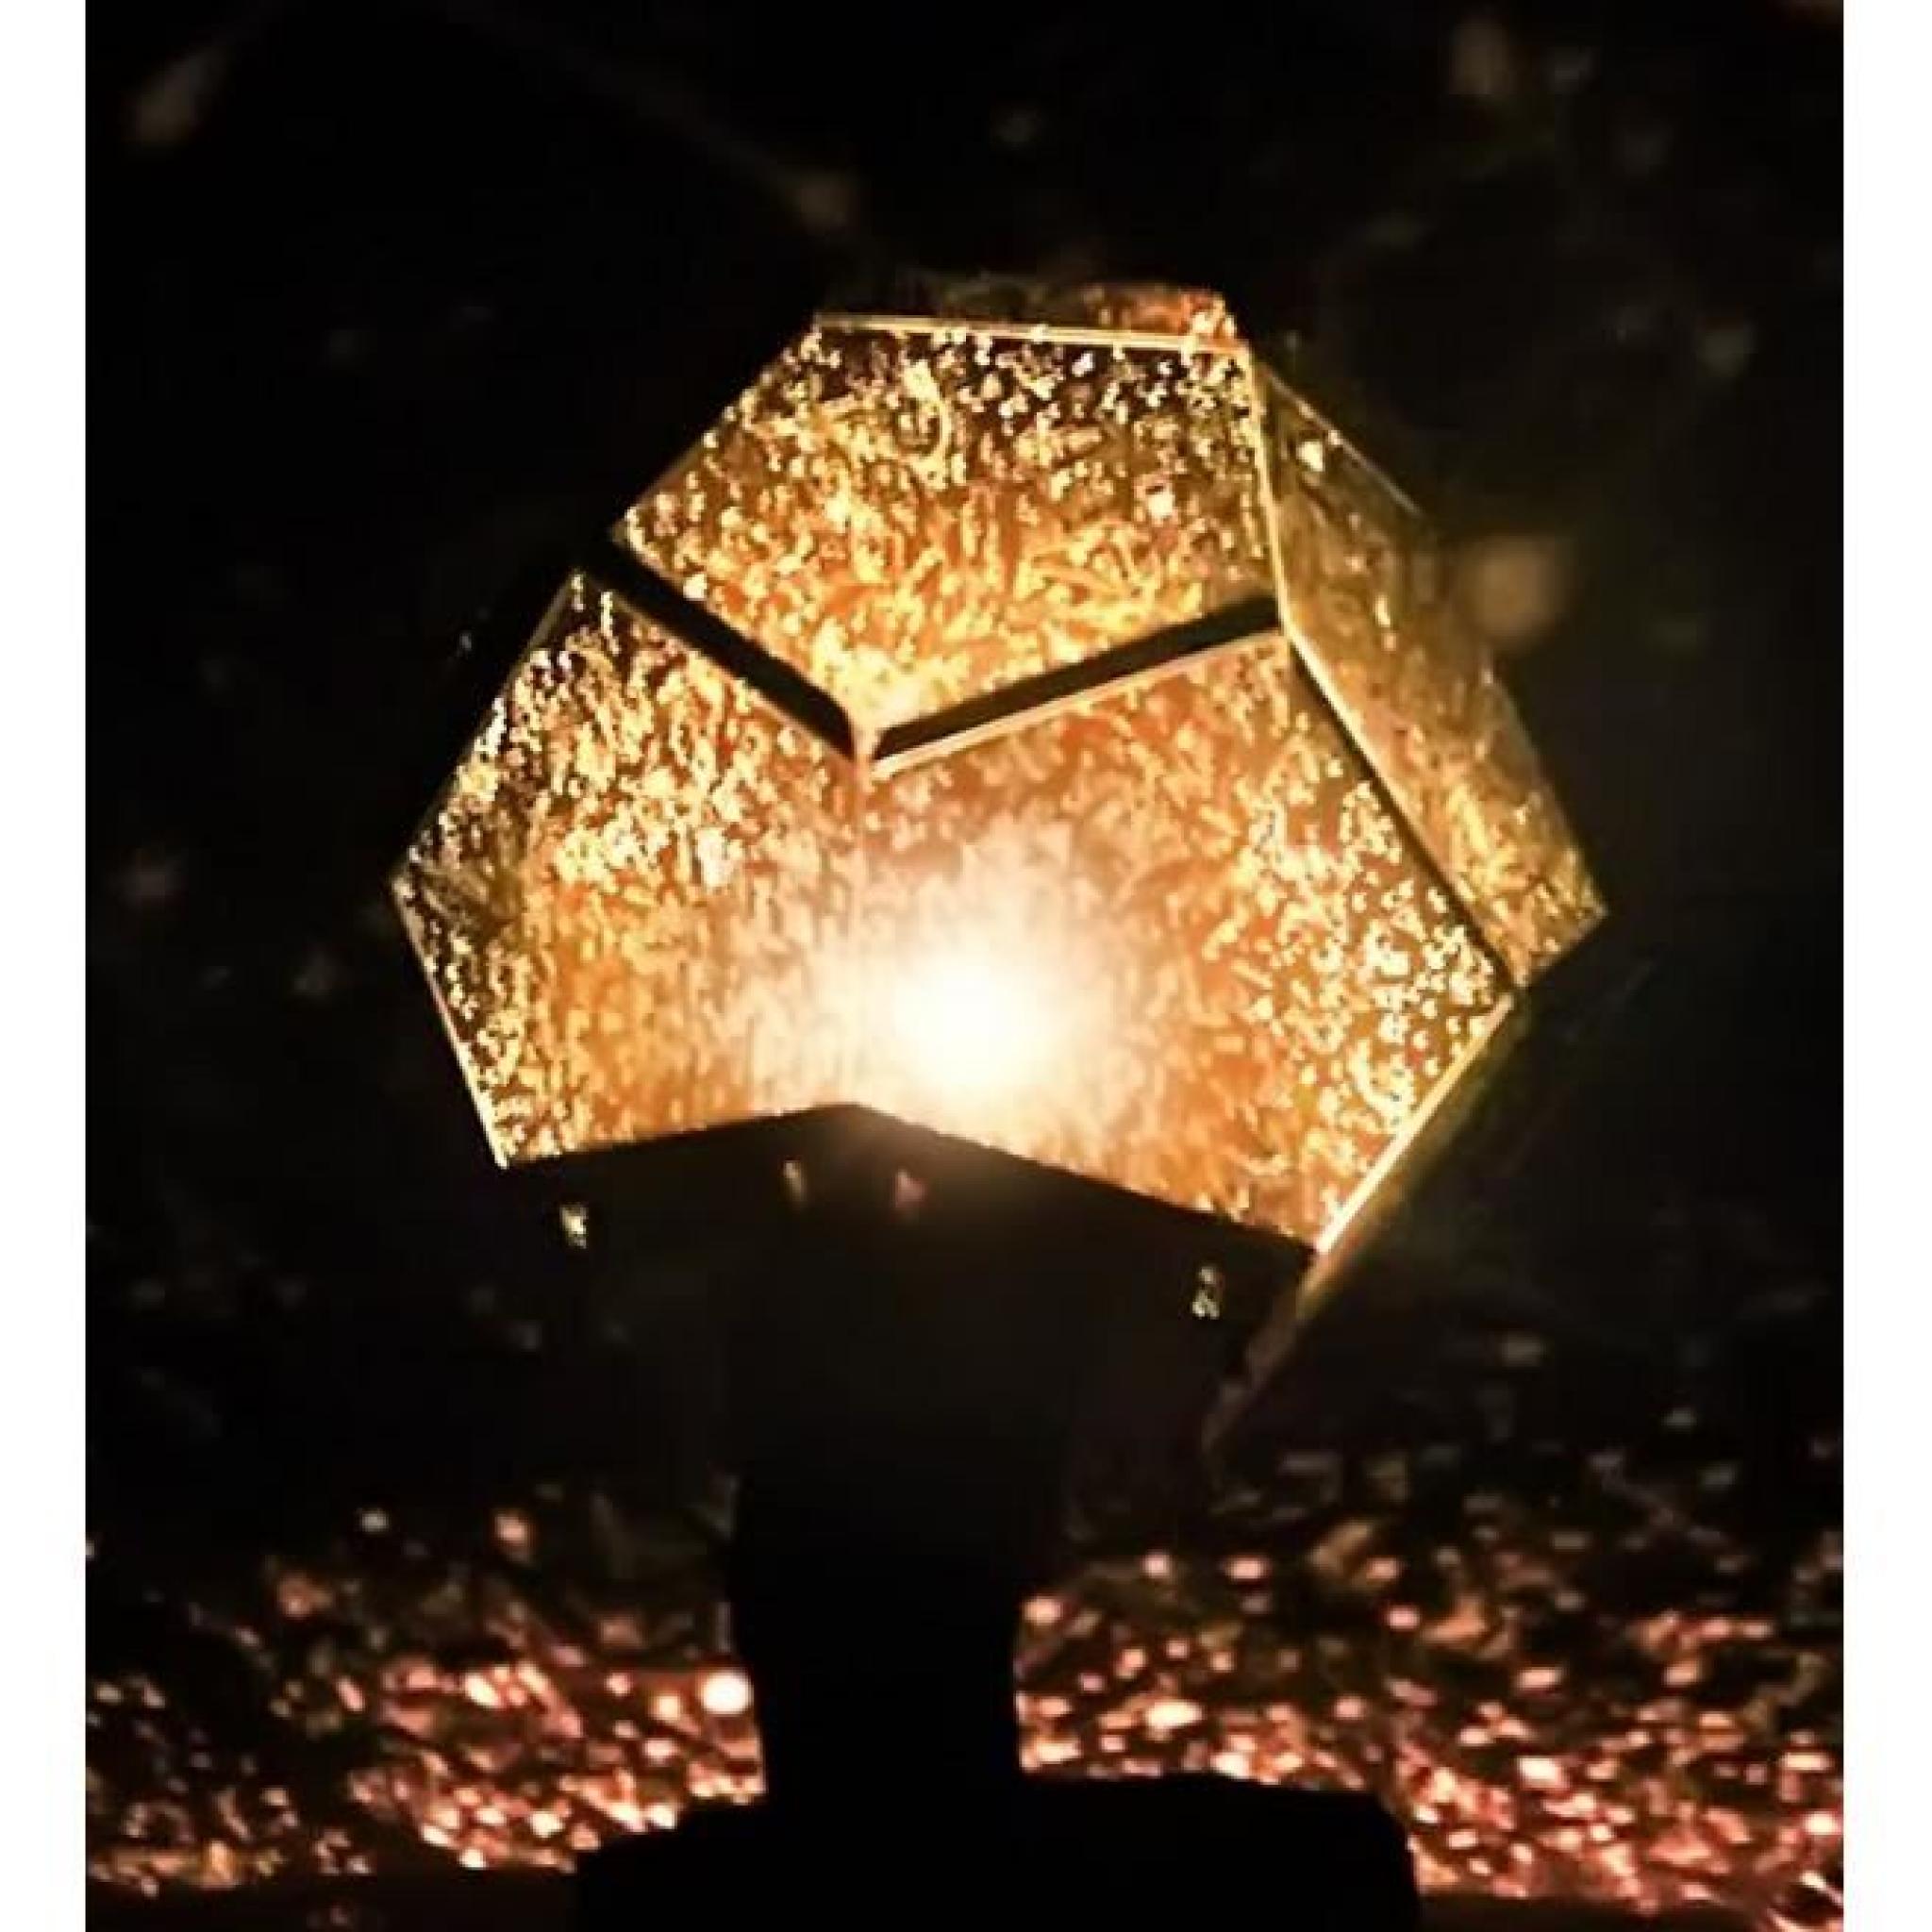 DIY Projecteur cosmos étoiles Lampe Lumière romantique fantaisie